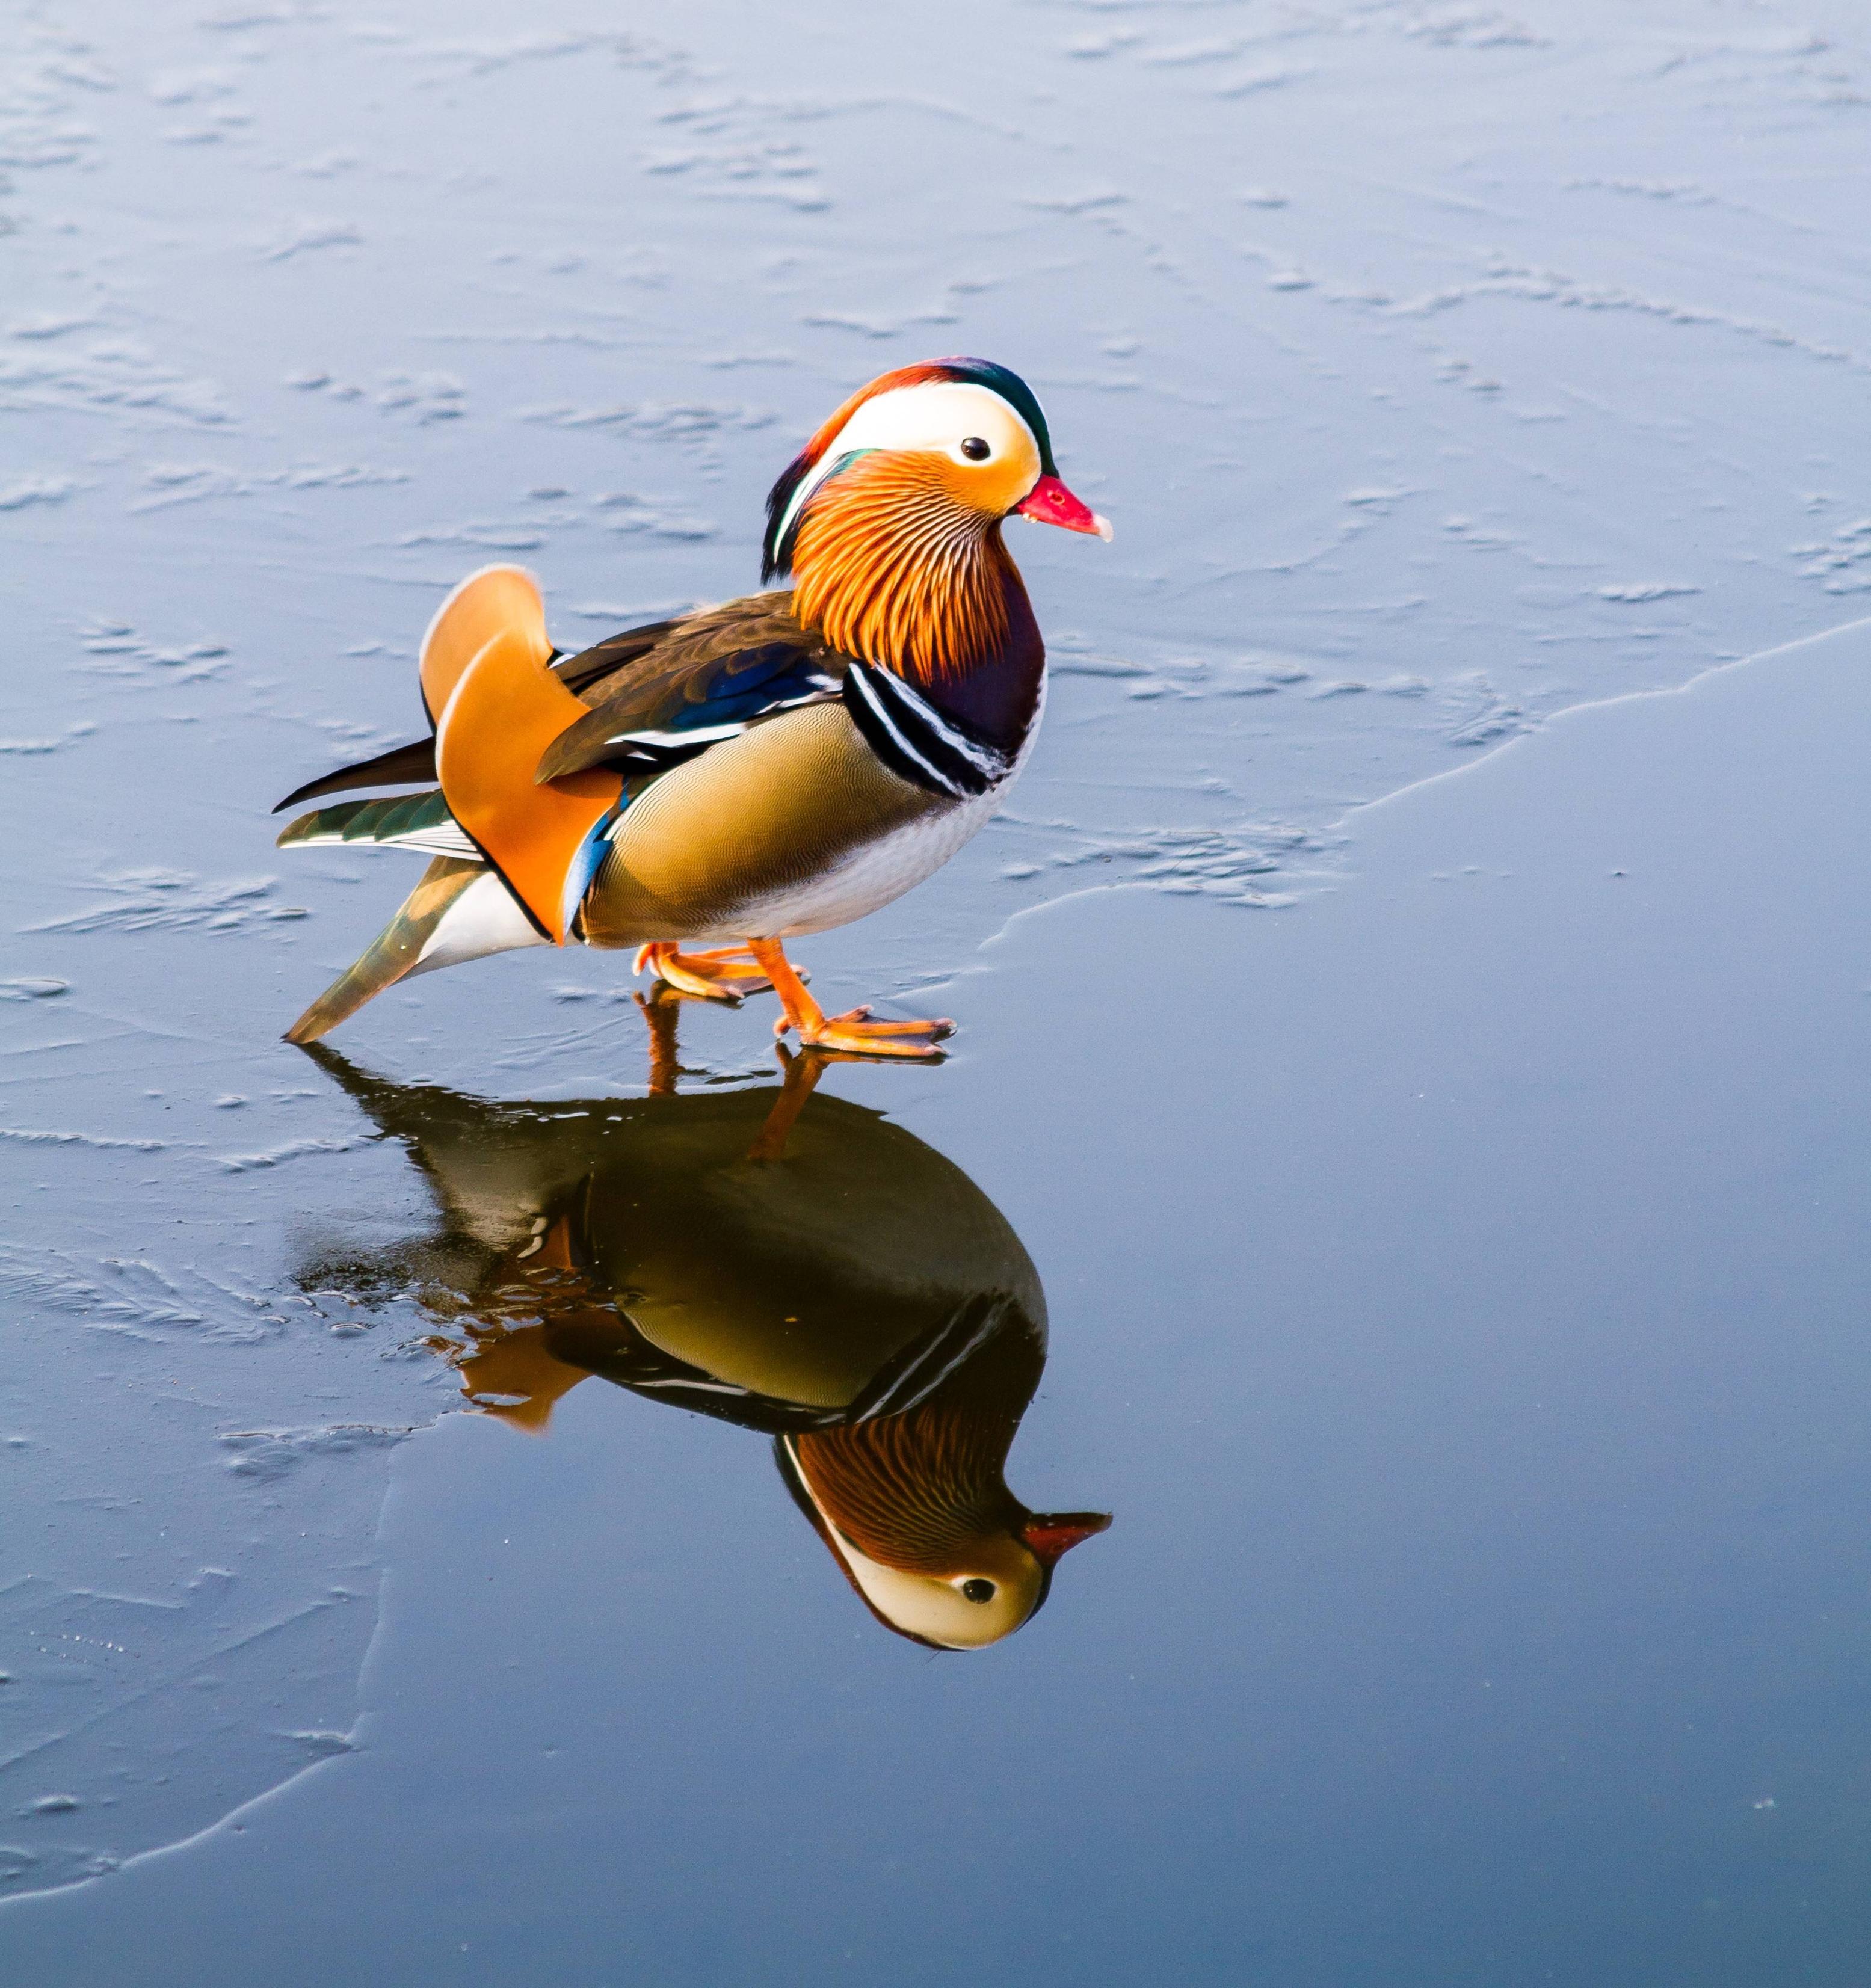 Heard Mandarin ducks are a thing